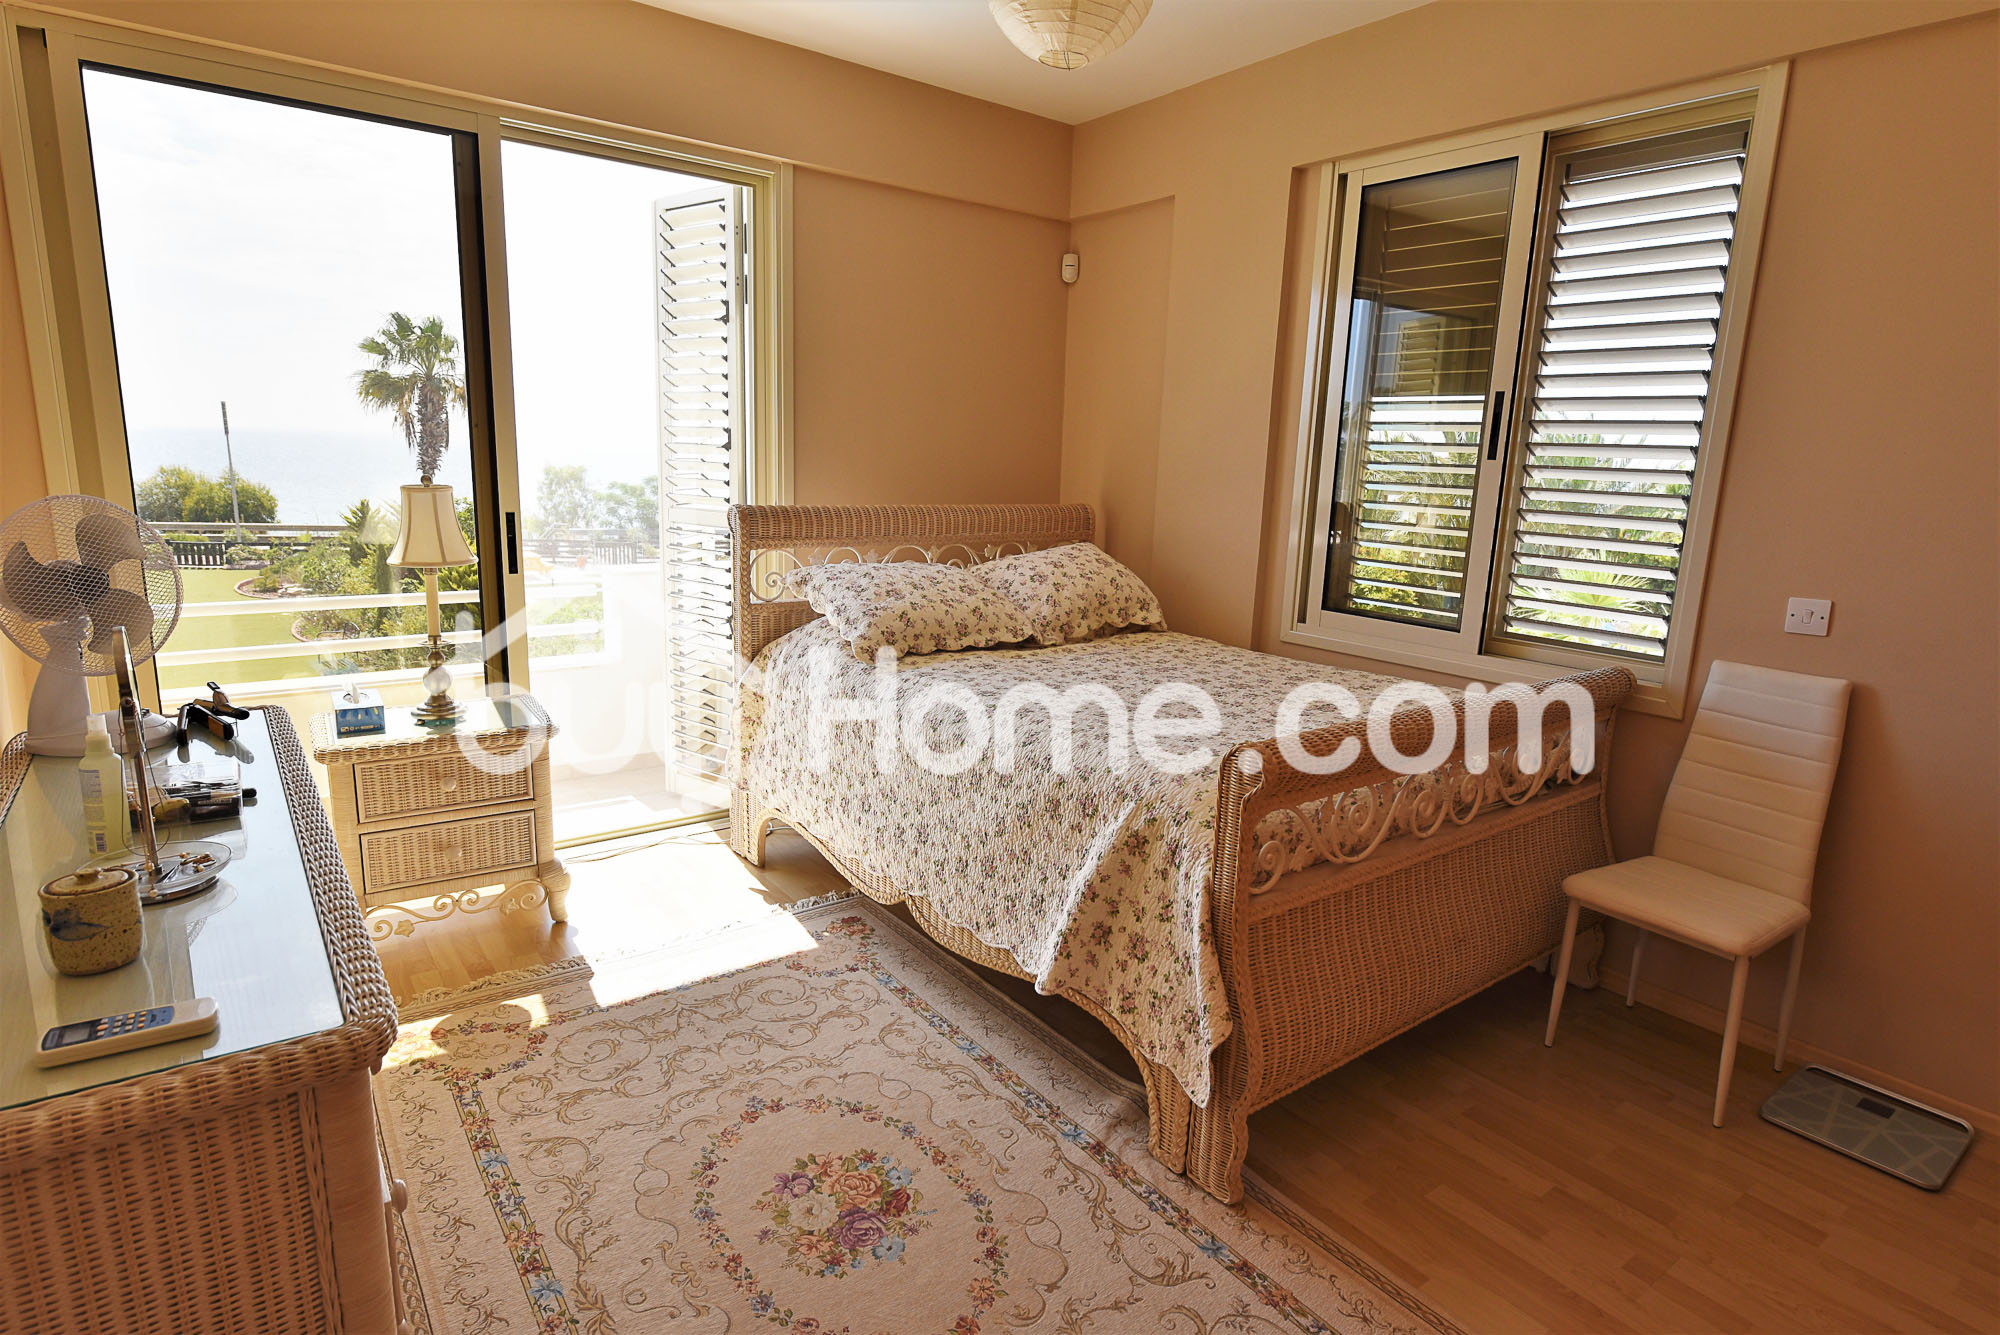 5 Bedroom Frontline Sea View Villa | BuyHome